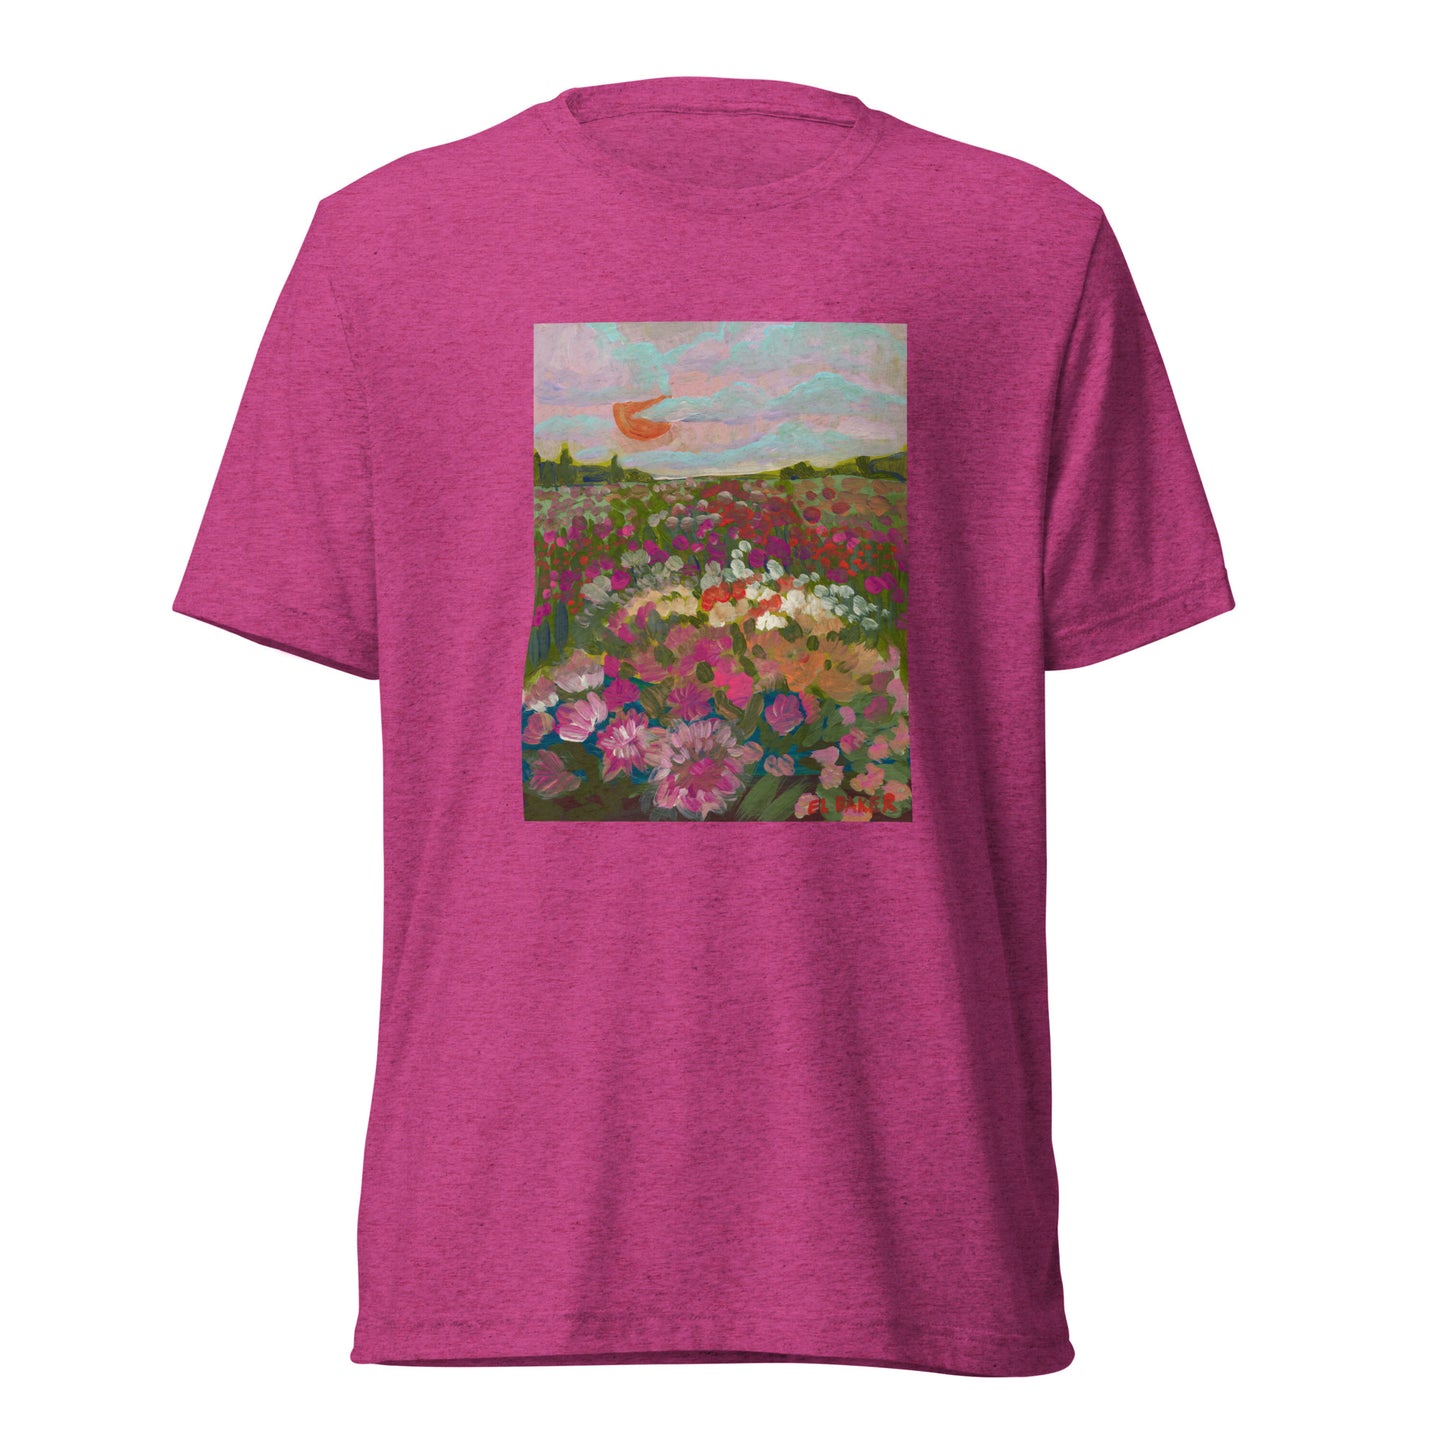 California Flower Farm T-Shirt